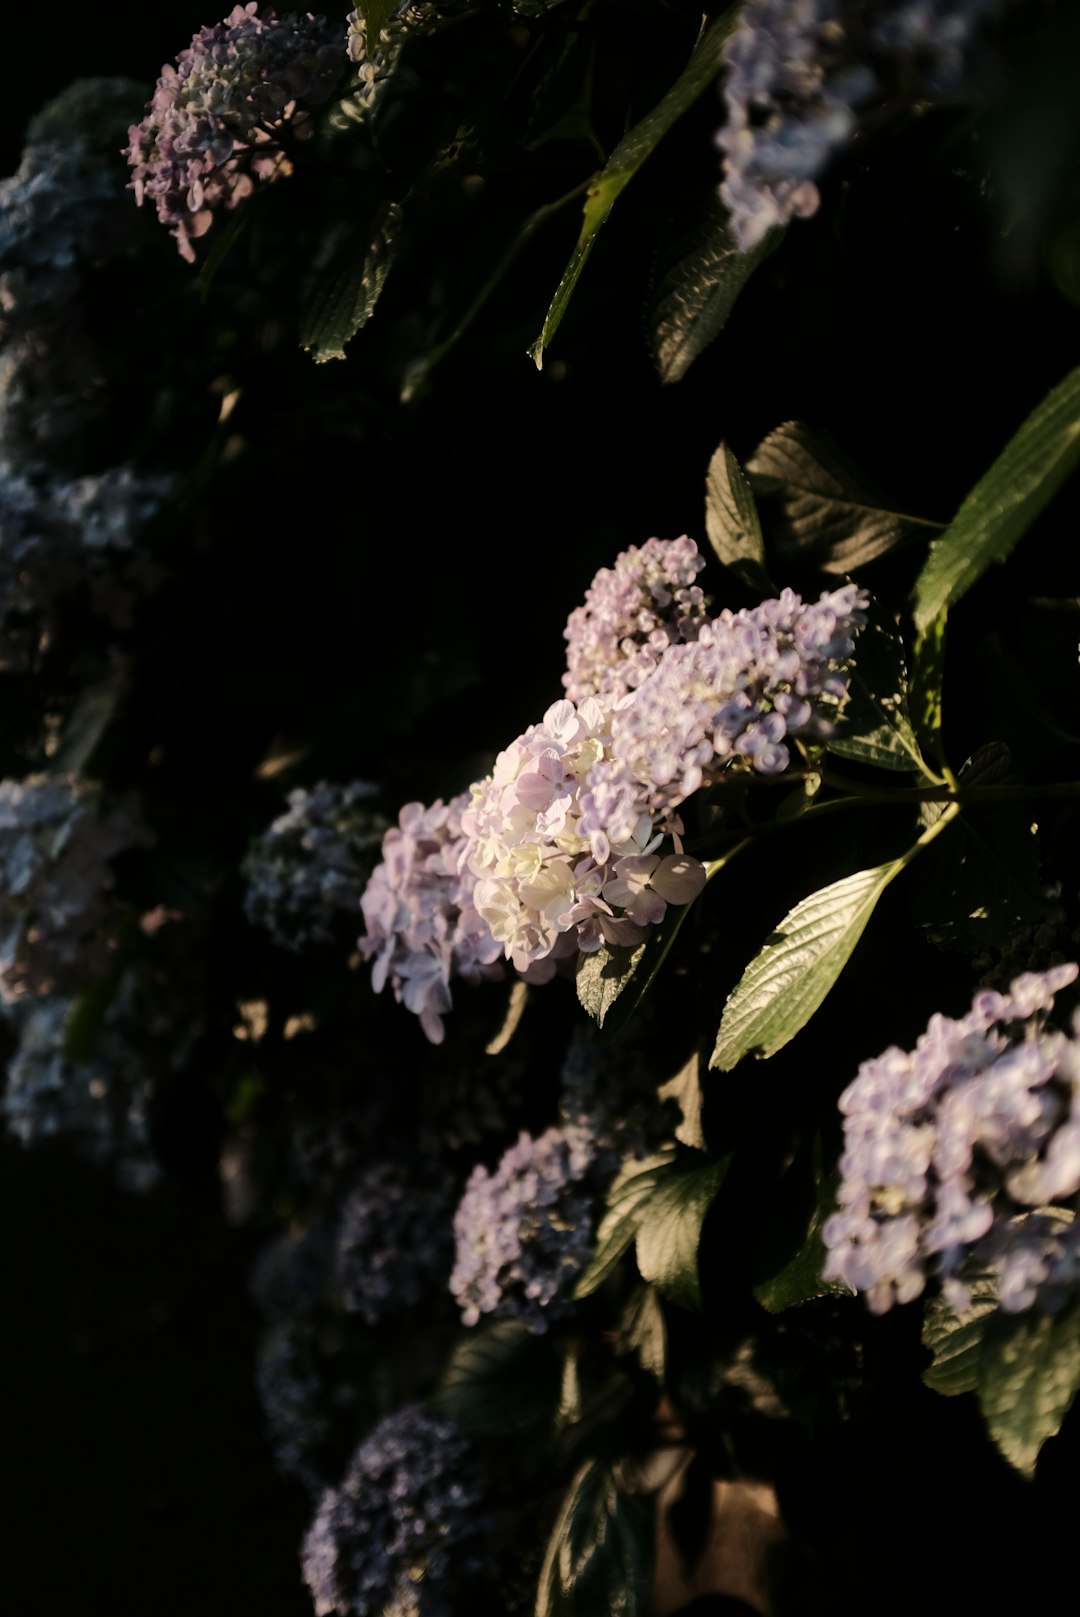 purple and white flower in tilt shift lens